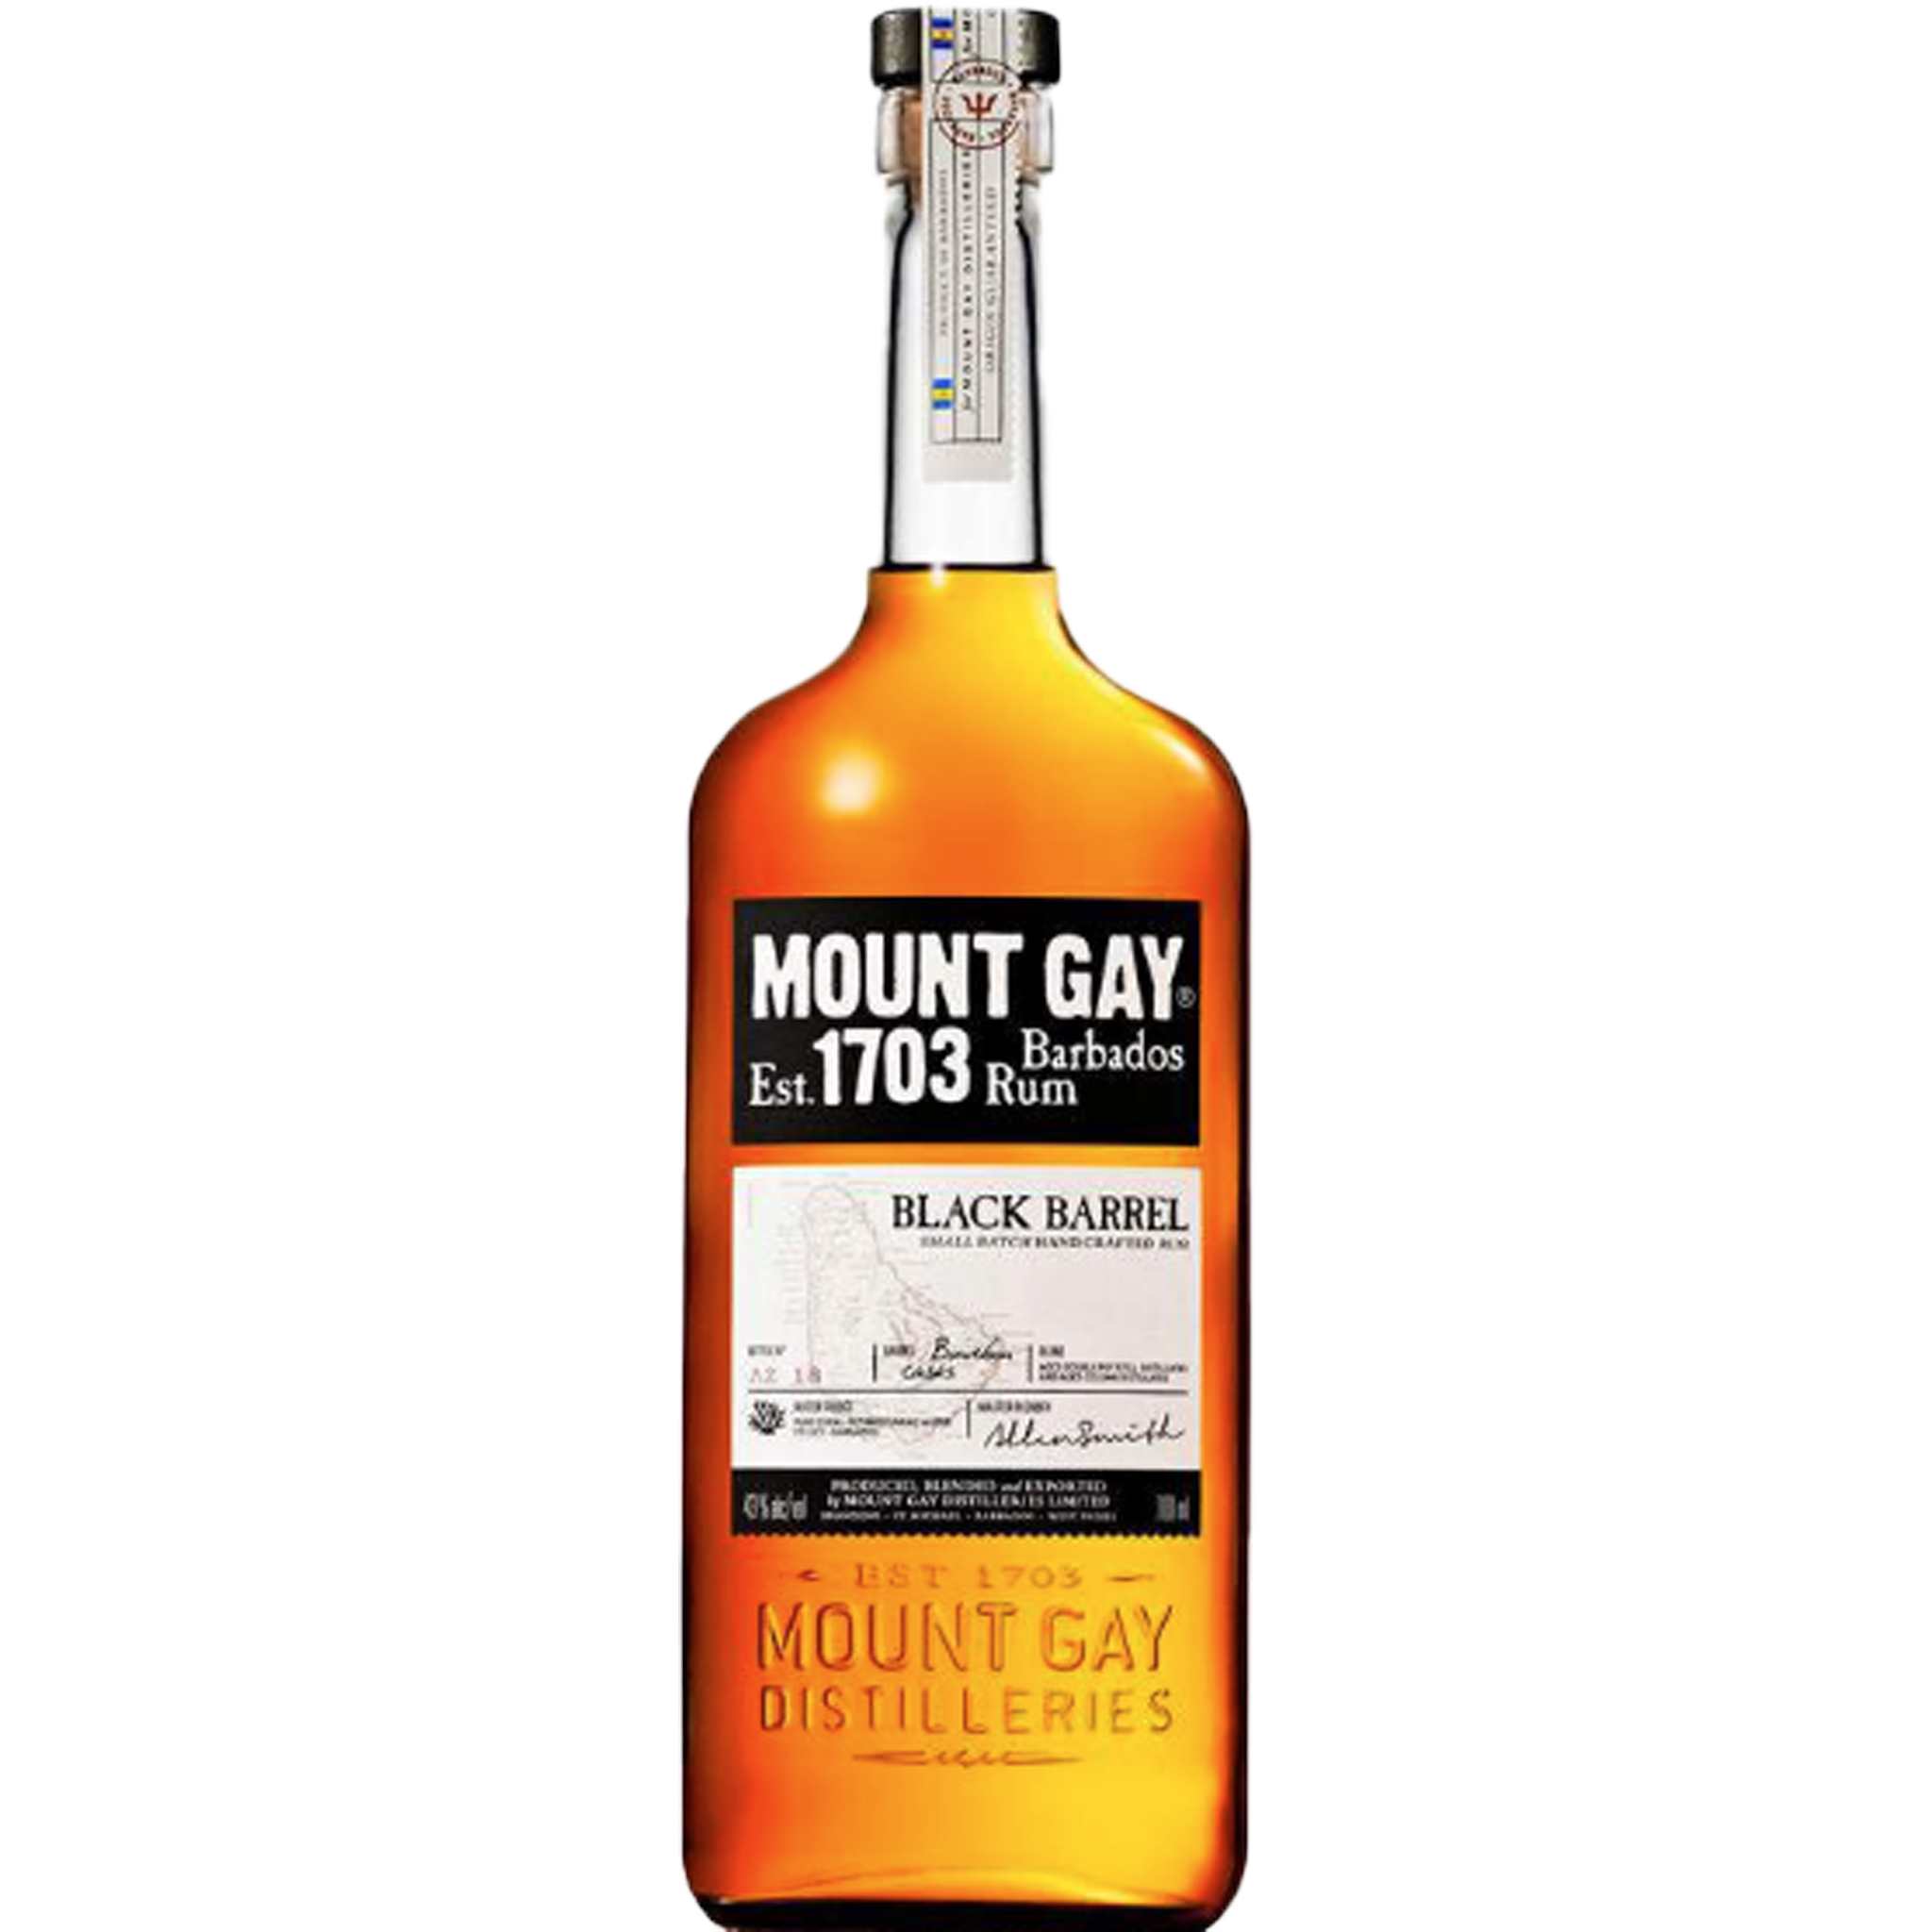 Mount Gay 1703 Barbados Rum